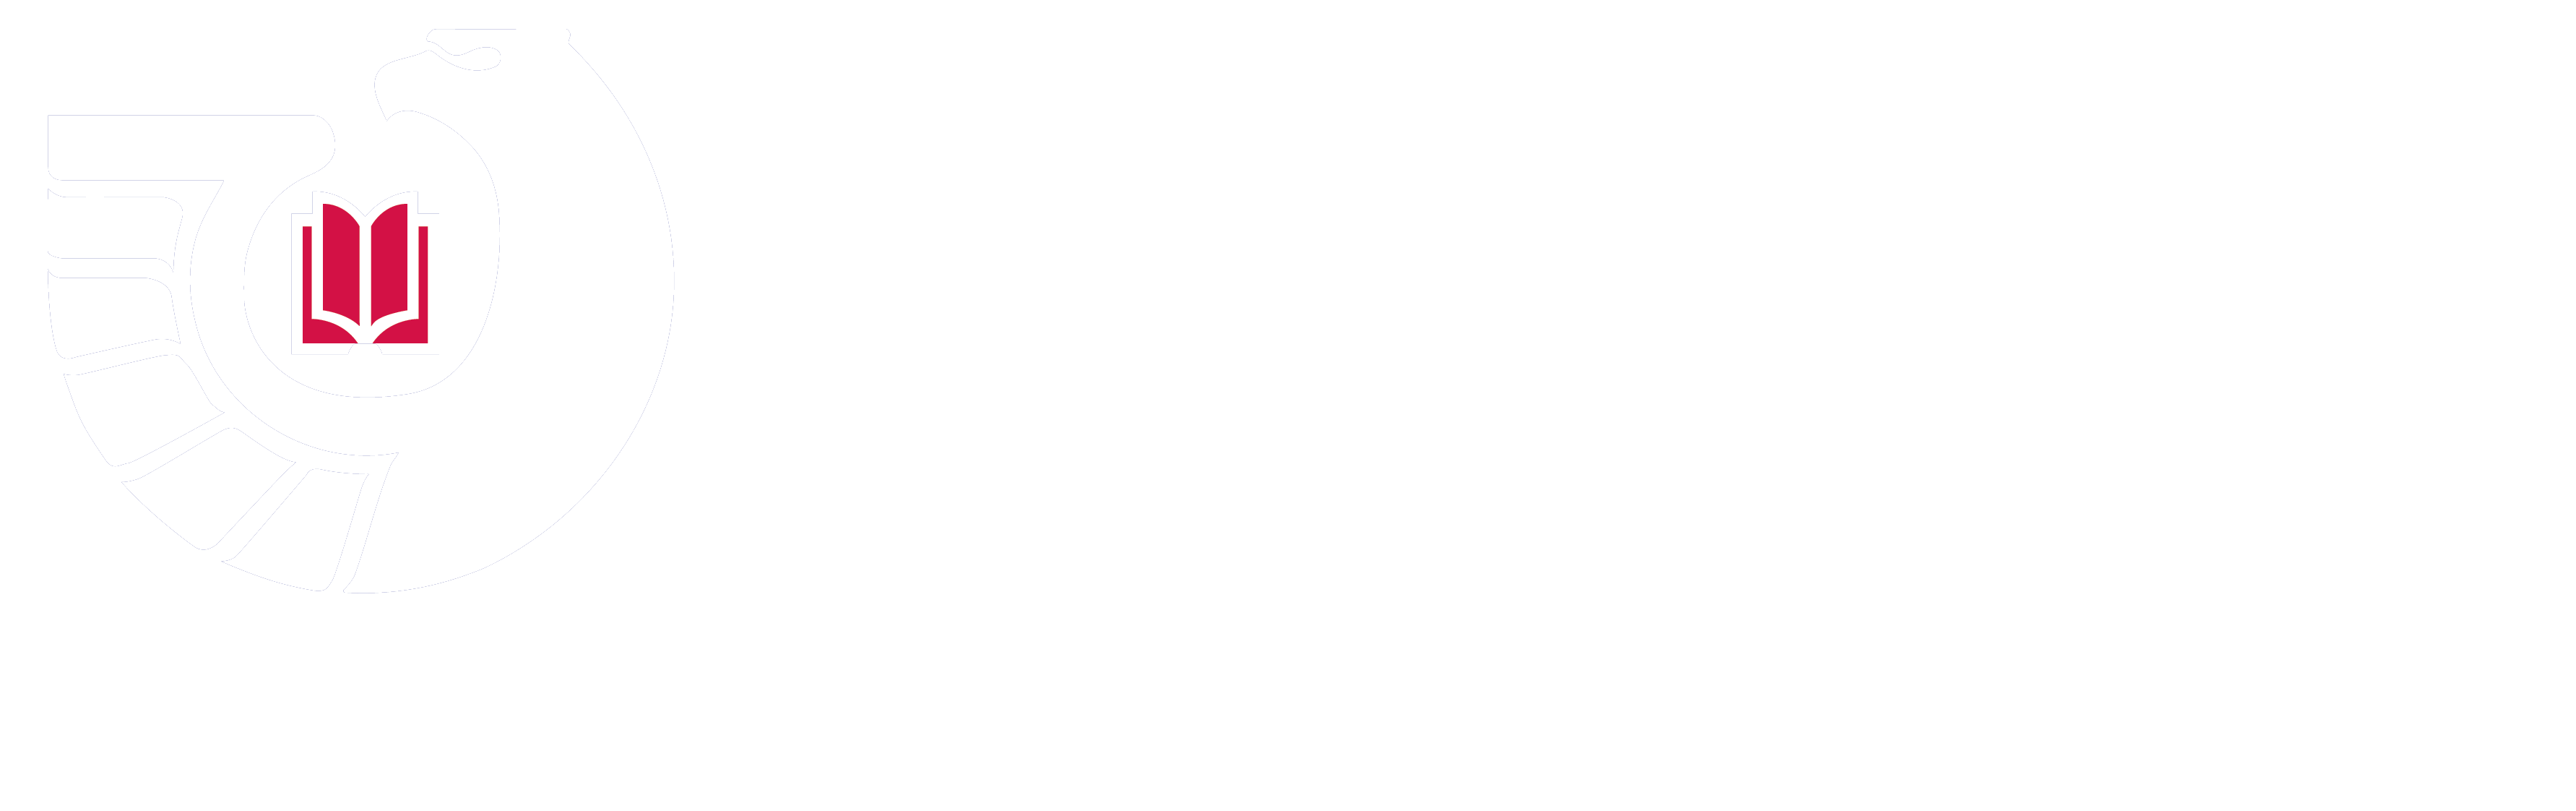 联邦图书馆储存库项目标识